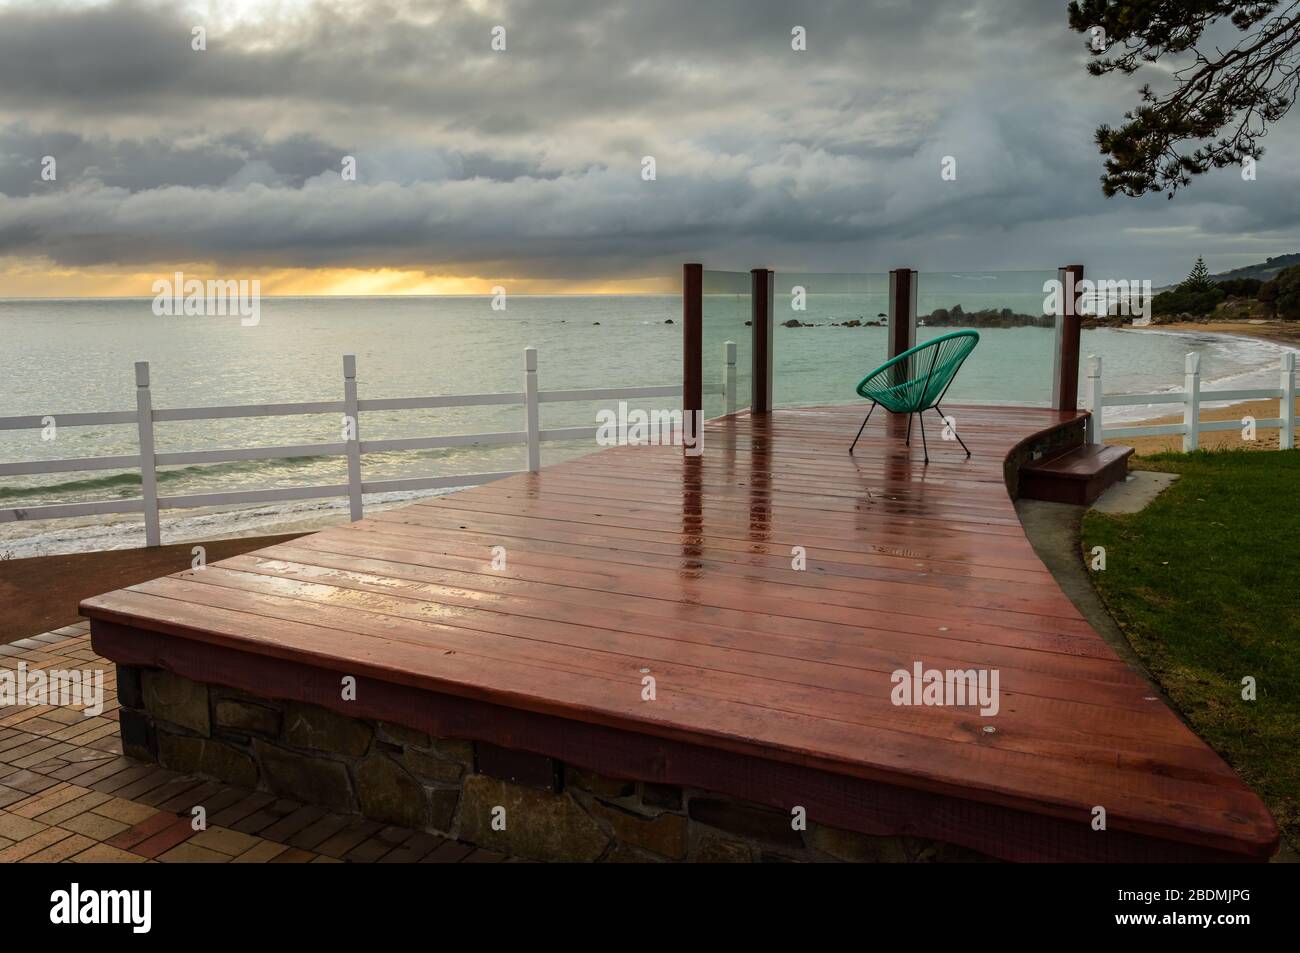 Vue d'une plate-forme artistique, touristique et d'observation avec chaise des années 70 donnant sur le détroit de Bass alors qu'une tempête se prépare au coucher du soleil dans la ville de Penguin. Banque D'Images